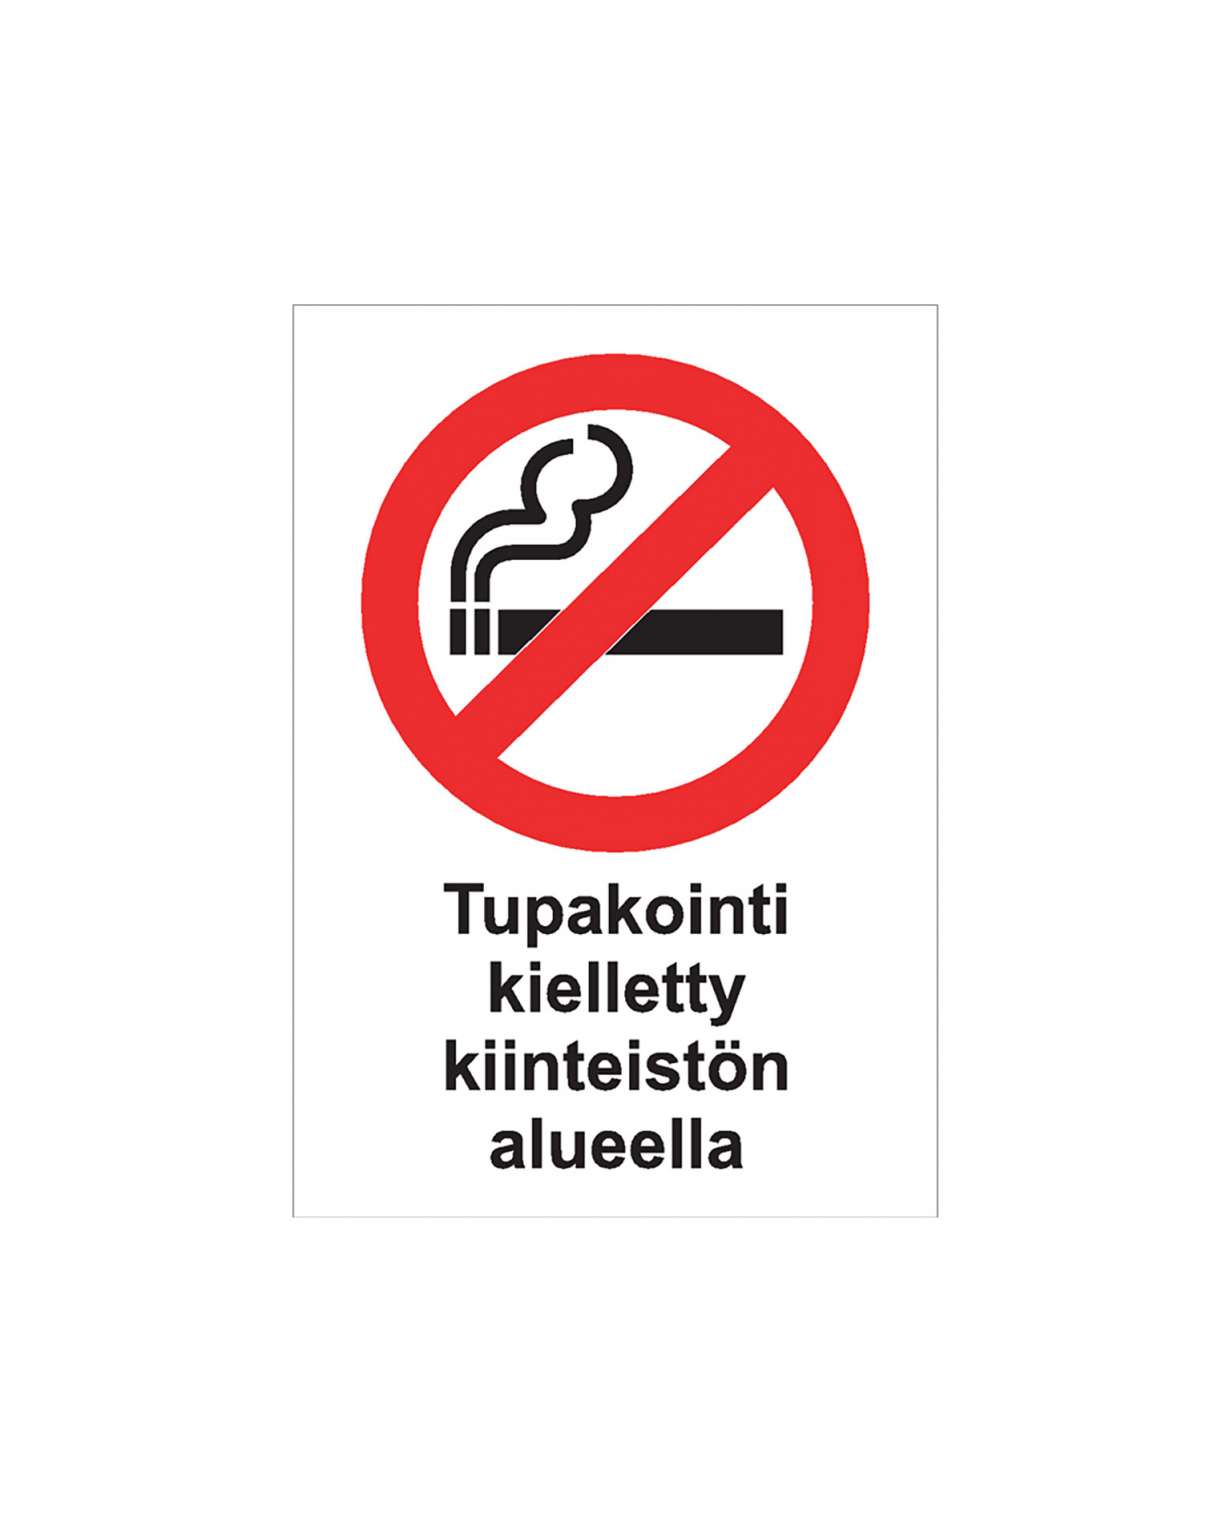 Tupakointi kielletty kiinteistön alueella, Ibond alumiini, 200x300 mm